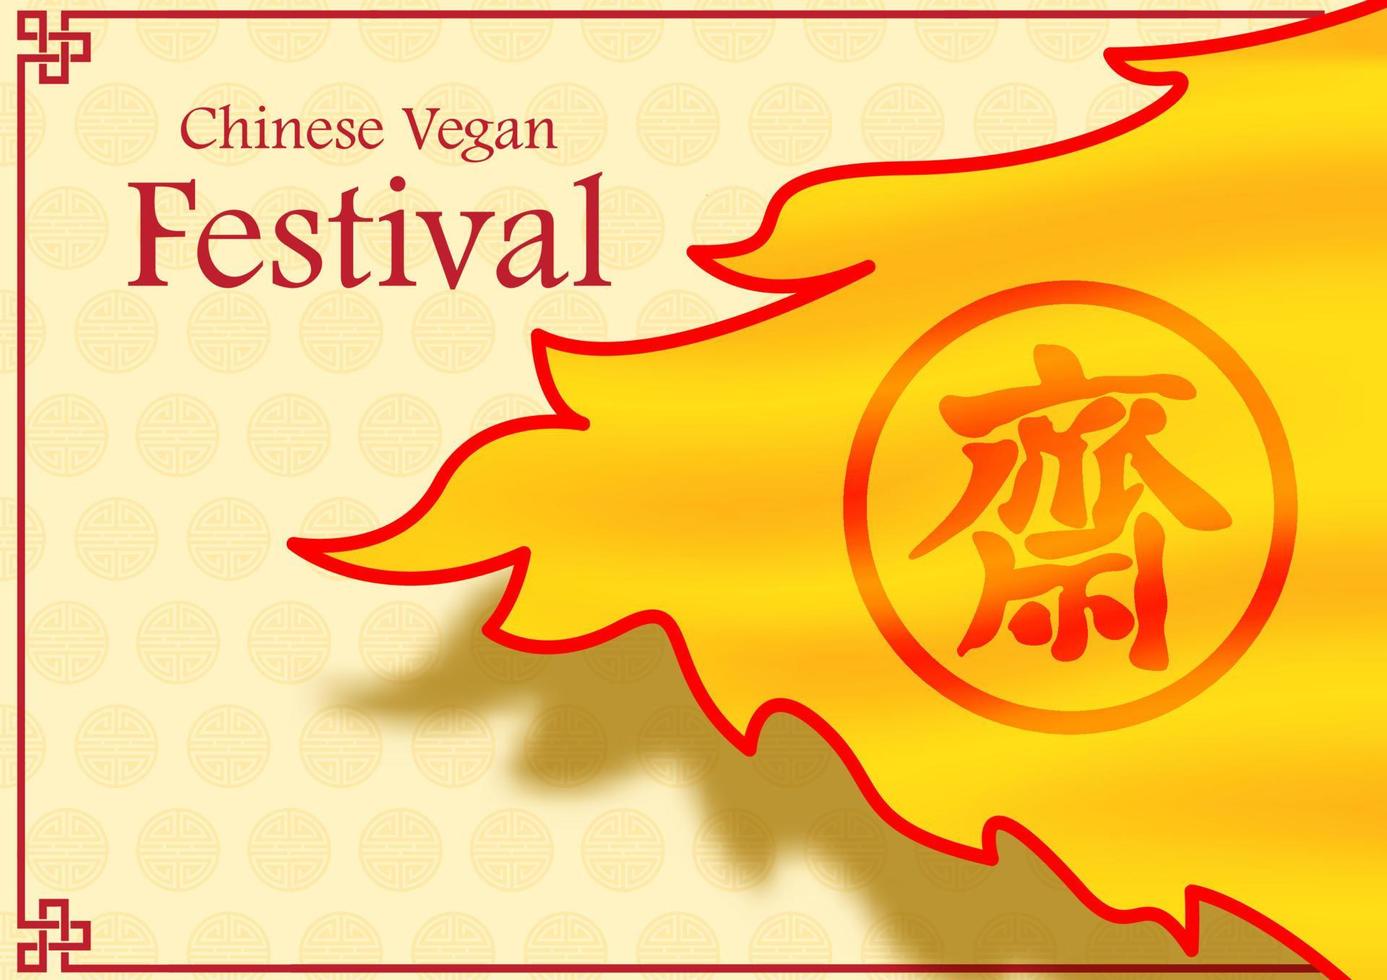 bandeiras gigantes do triângulo do festival vegano chinês na sombra com canto de decoração no padrão de decoração chinês e fundo amarelo. letras chinesas vermelhas significa jejuar para adorar buda em inglês. vetor